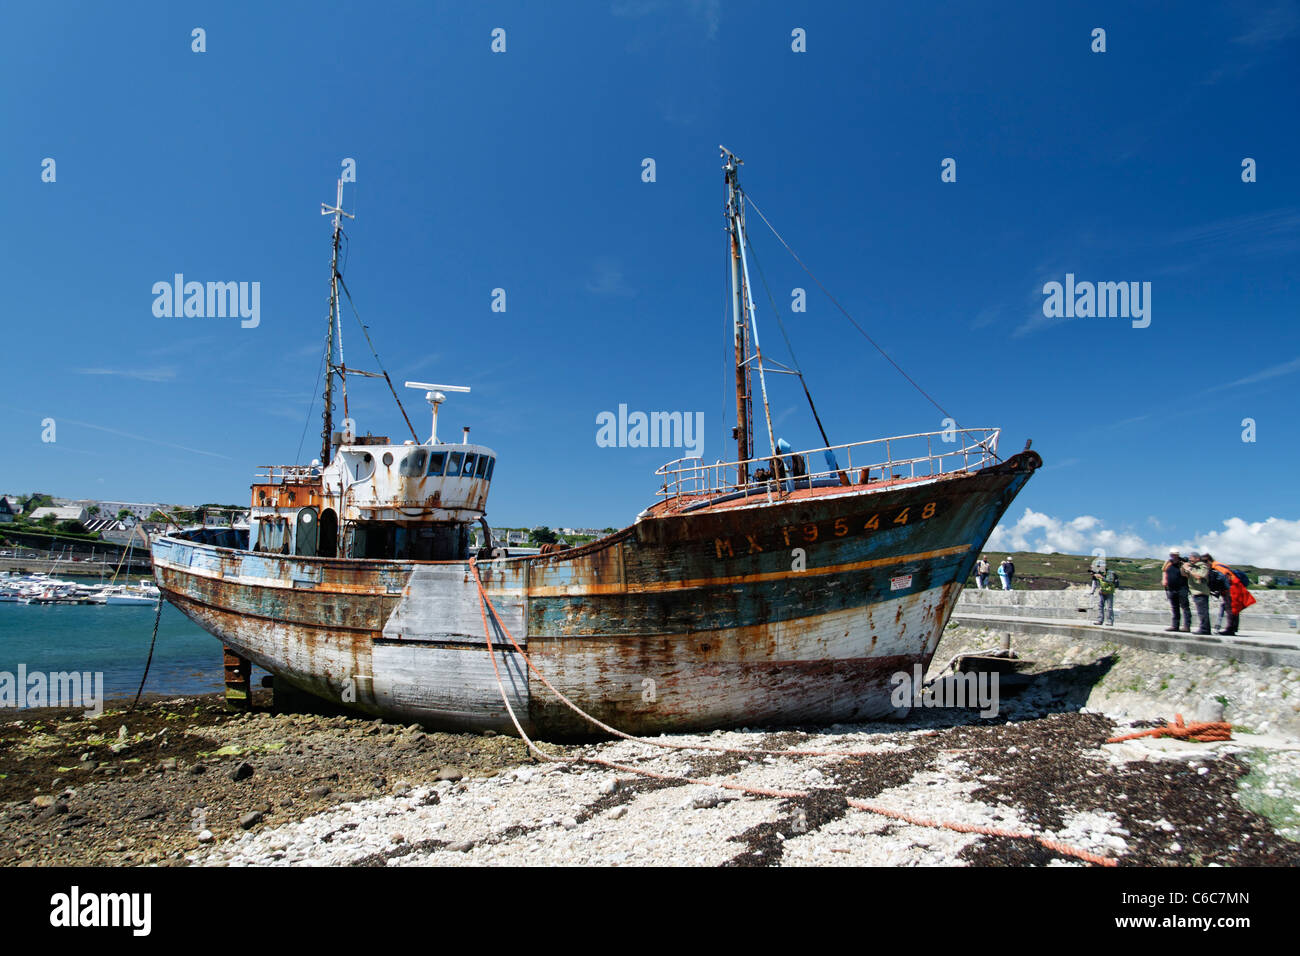 L'épave de bateau de pêche sur la rive, Camaret sur mer, Bretagne, France. Banque D'Images